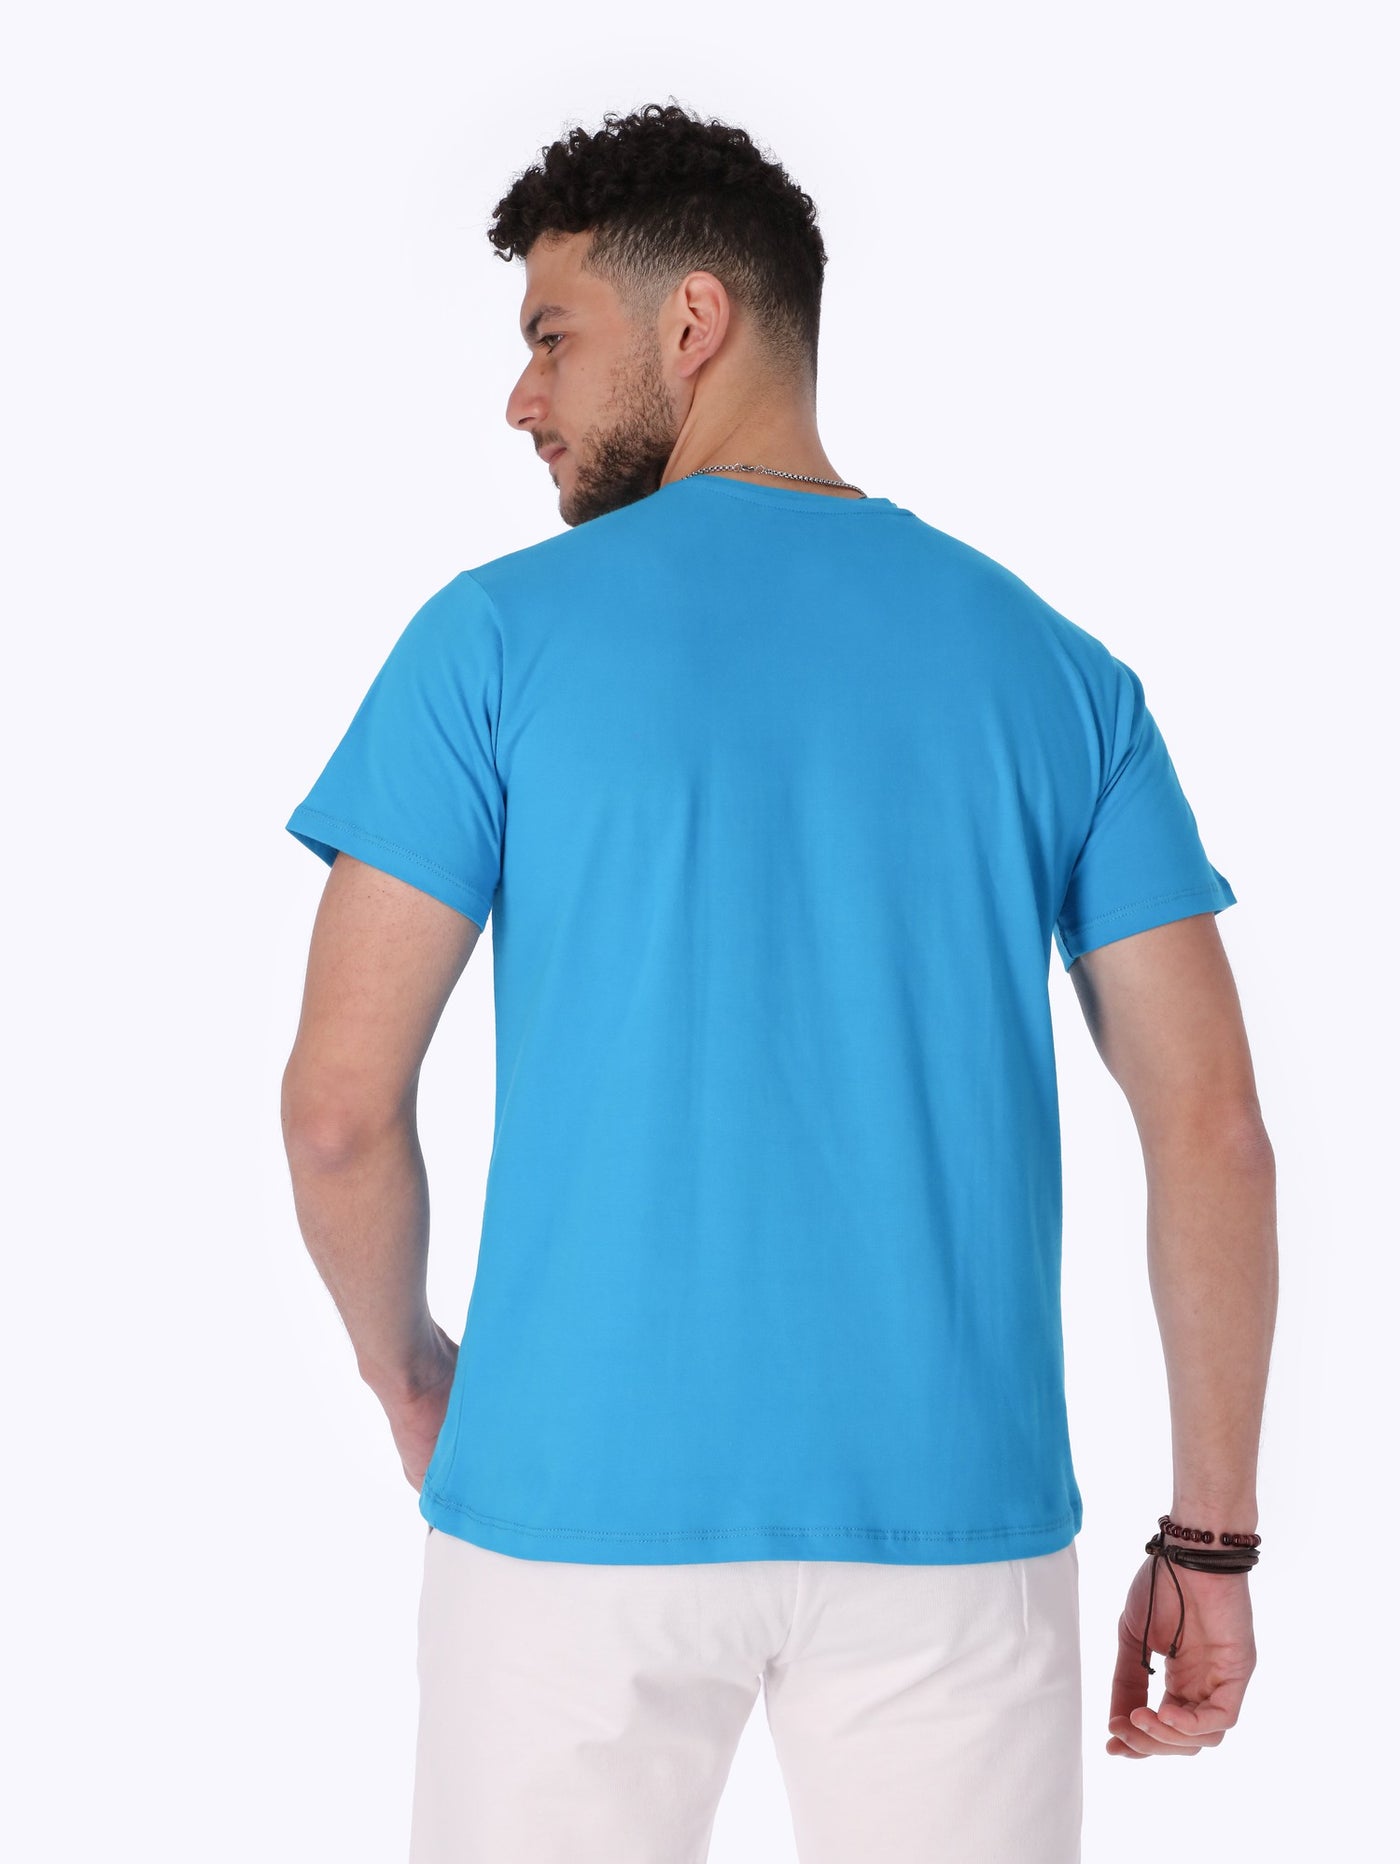 Unisex Basic T-Shirt - Round Neck